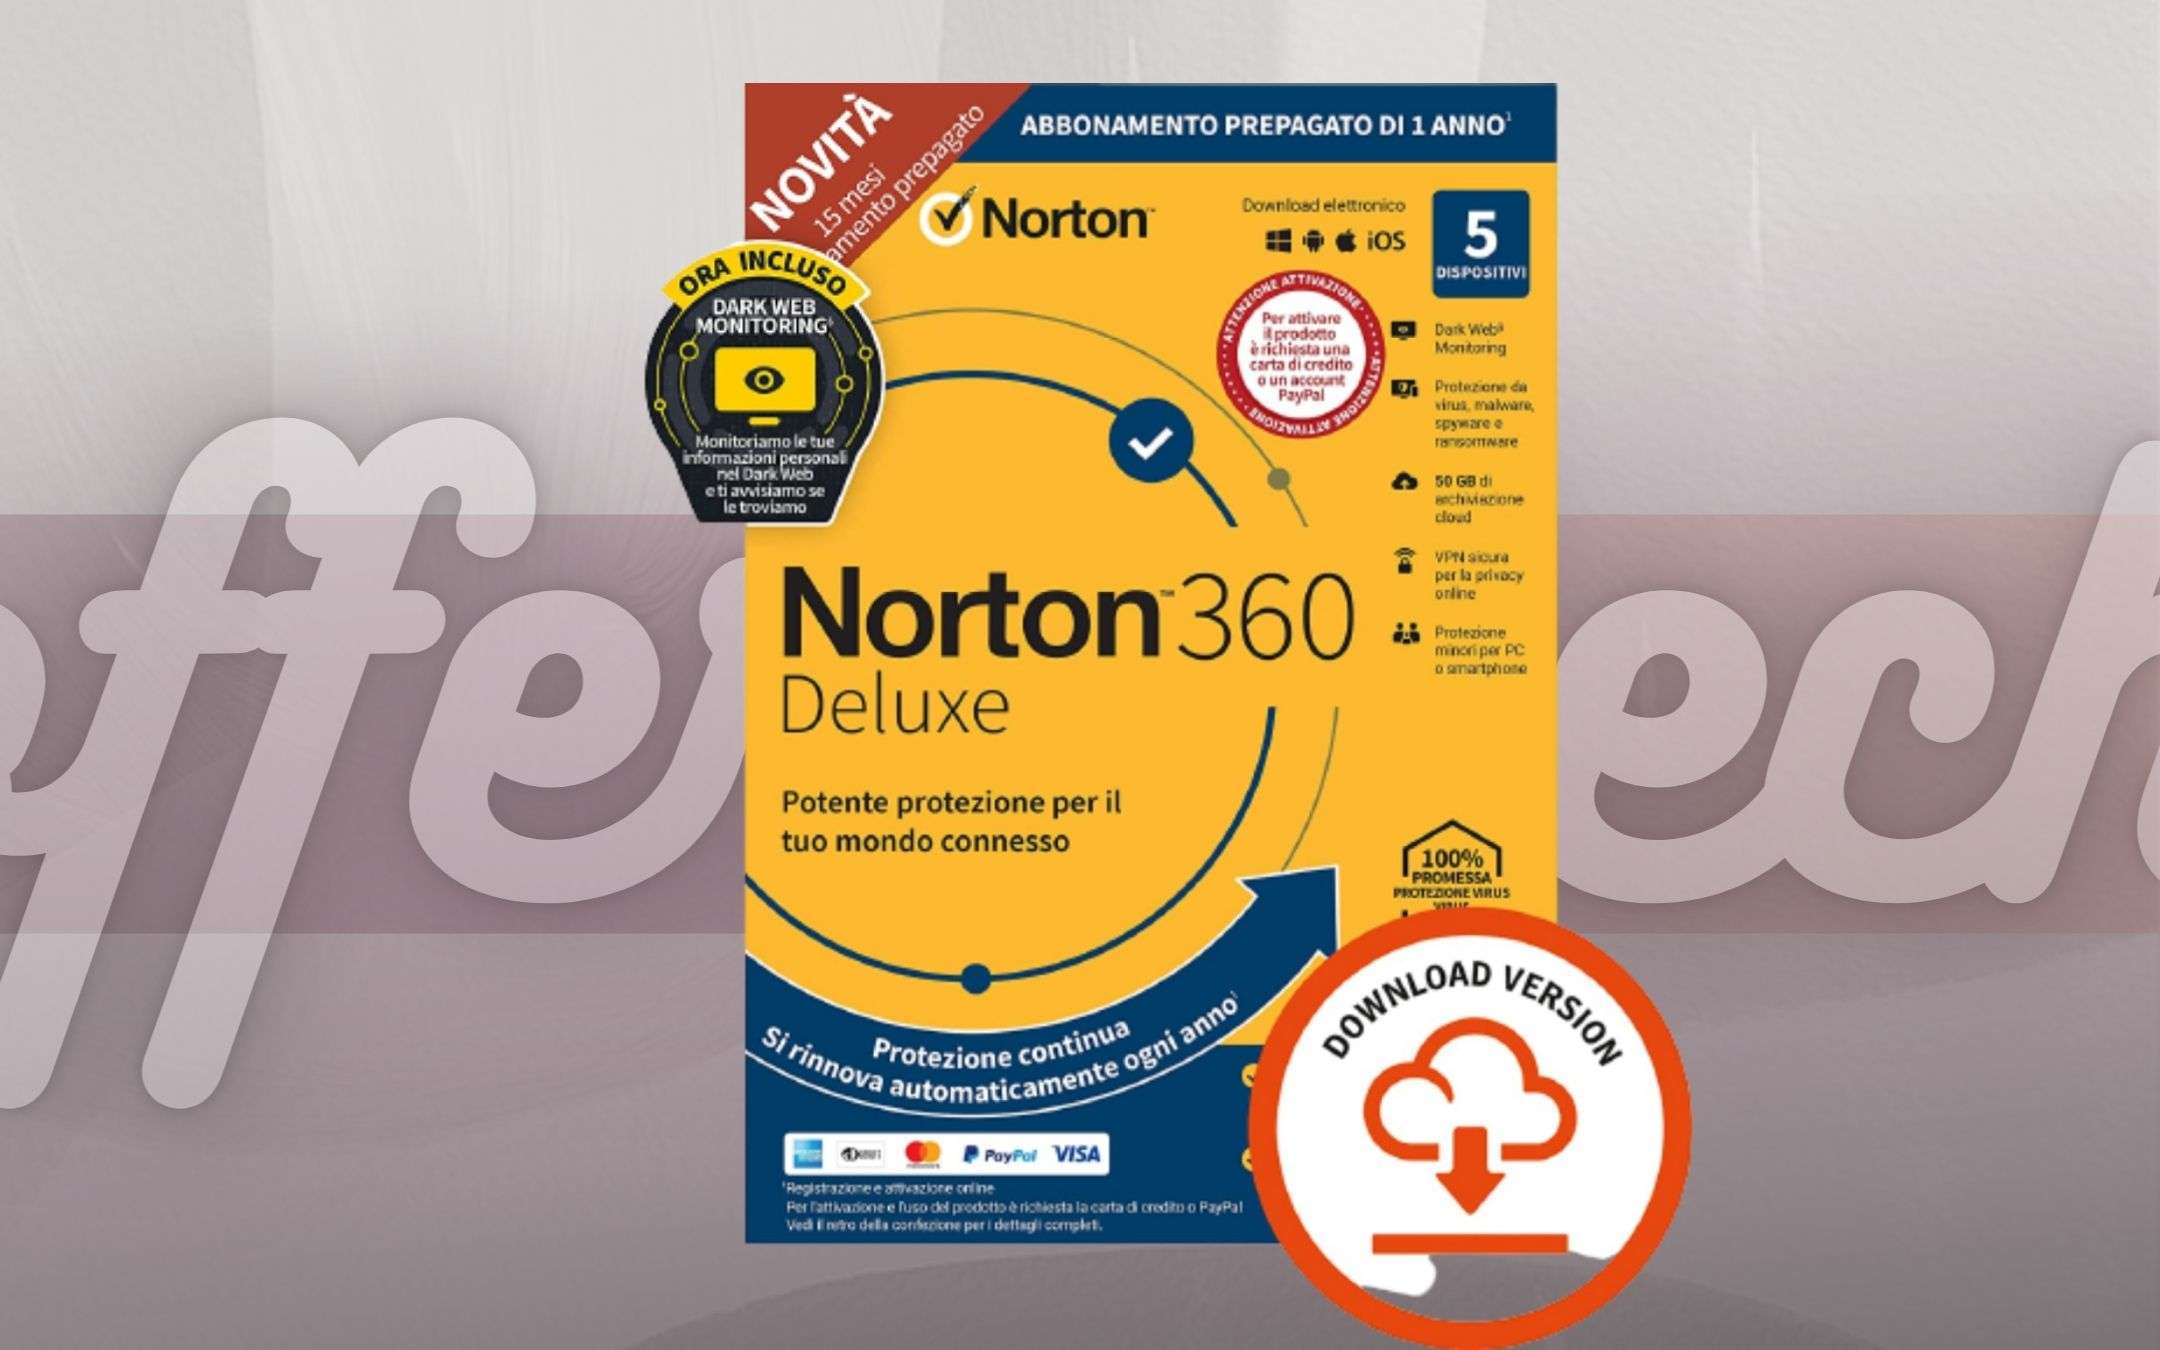 Norton 360 Deluxe 2021 e cinque dispositivi sono SICURI